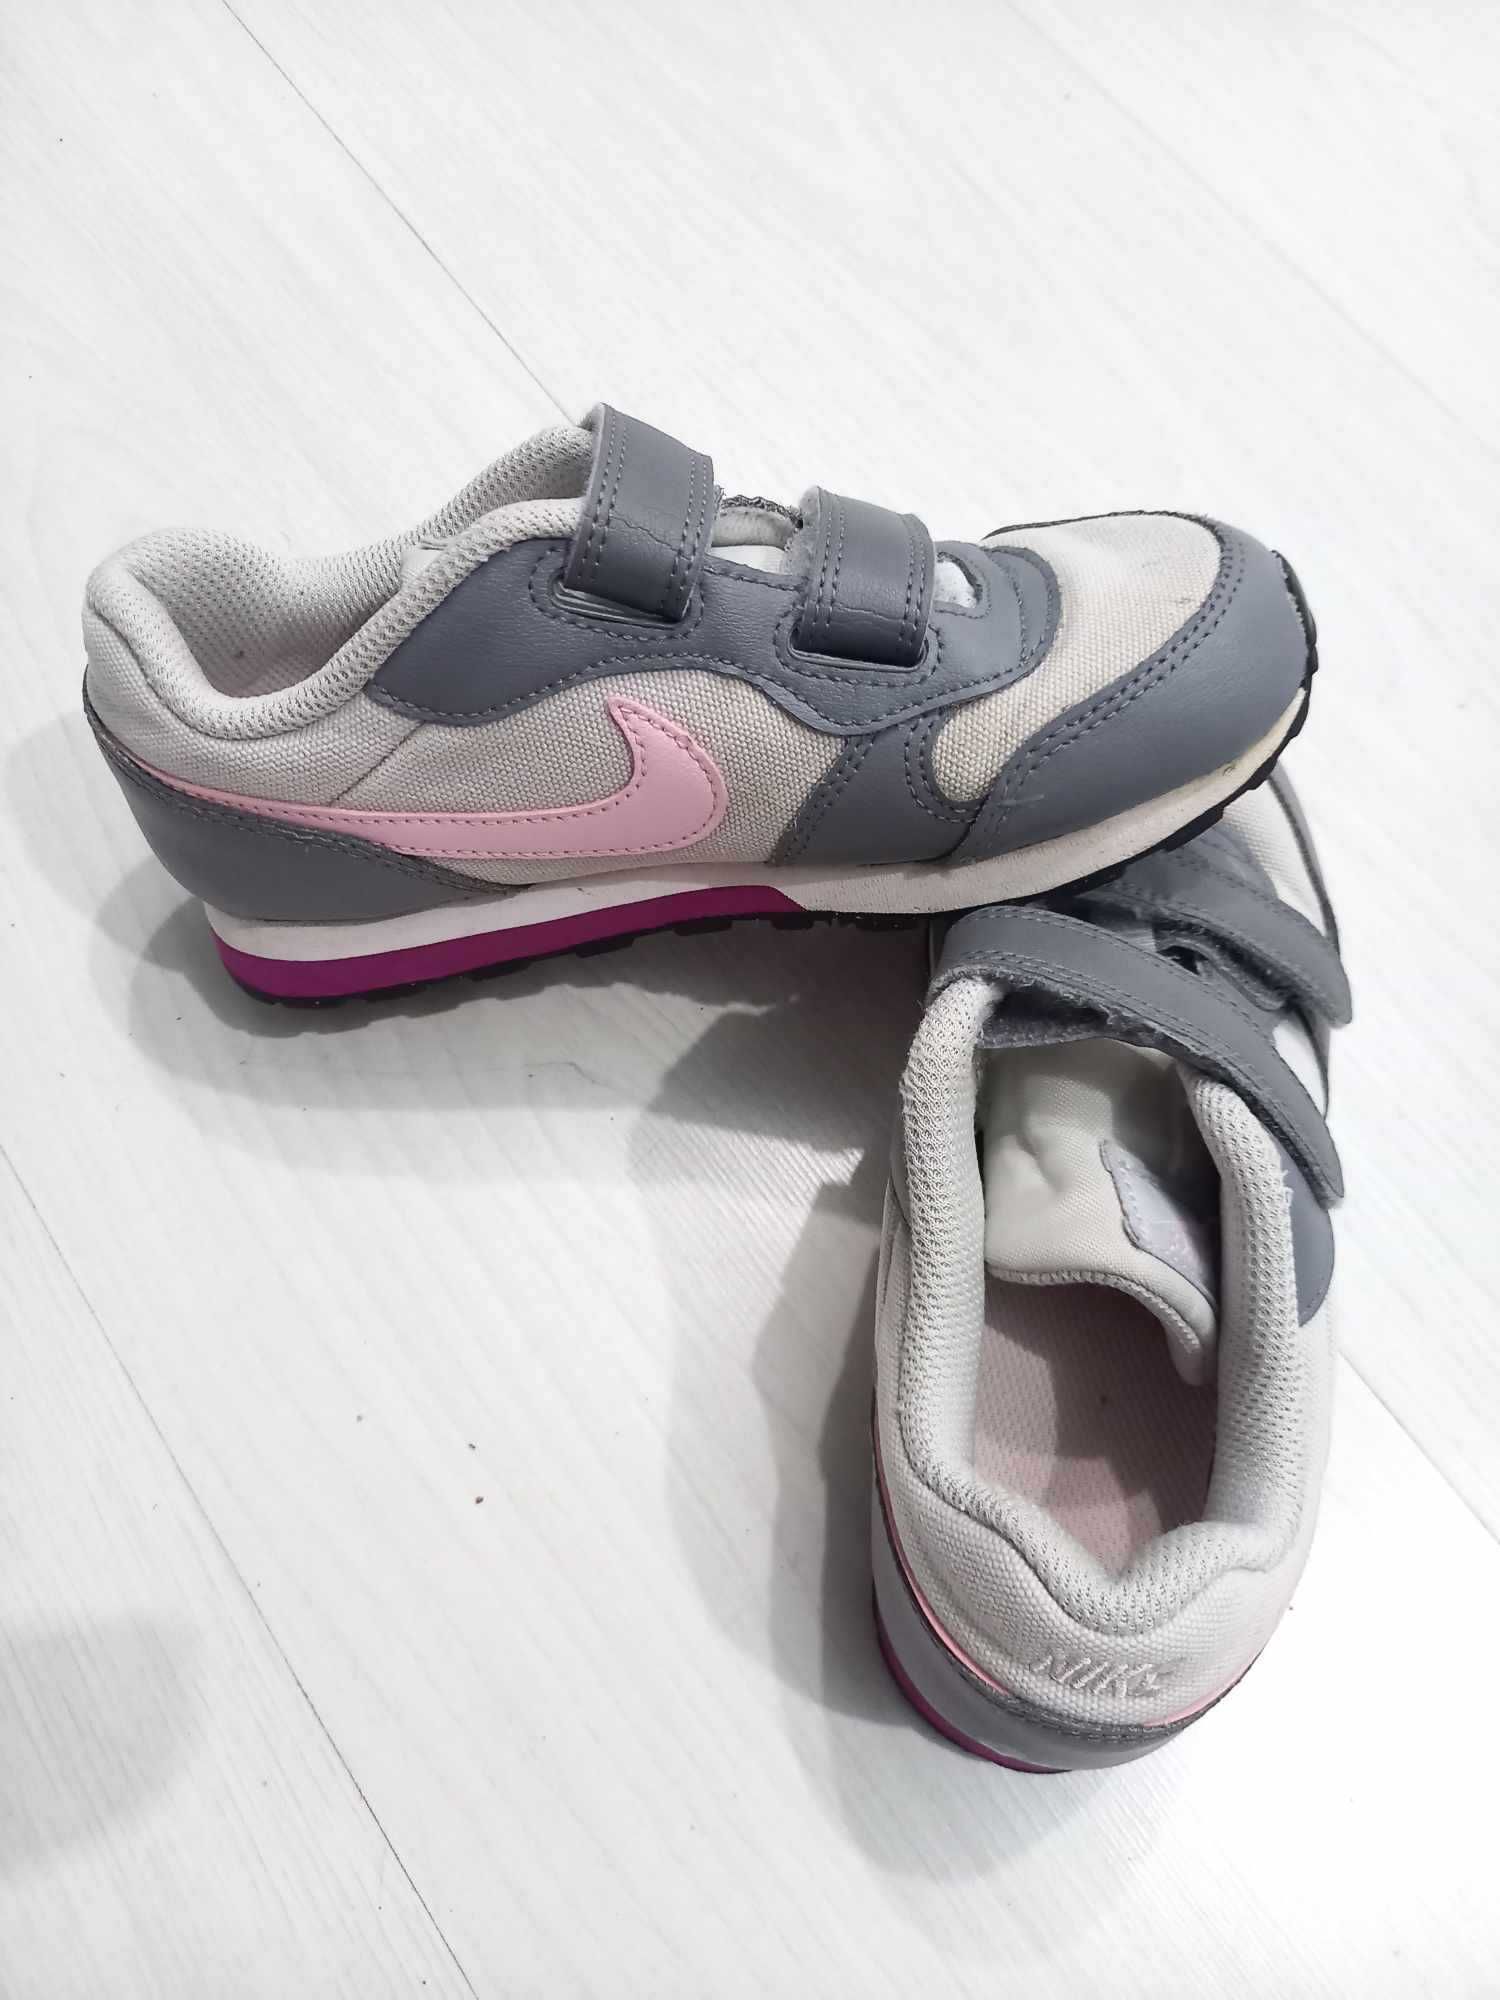 buty dziecięce dla dziewczynki Nike. Rozmiar 31, długość wkładki 19 cm